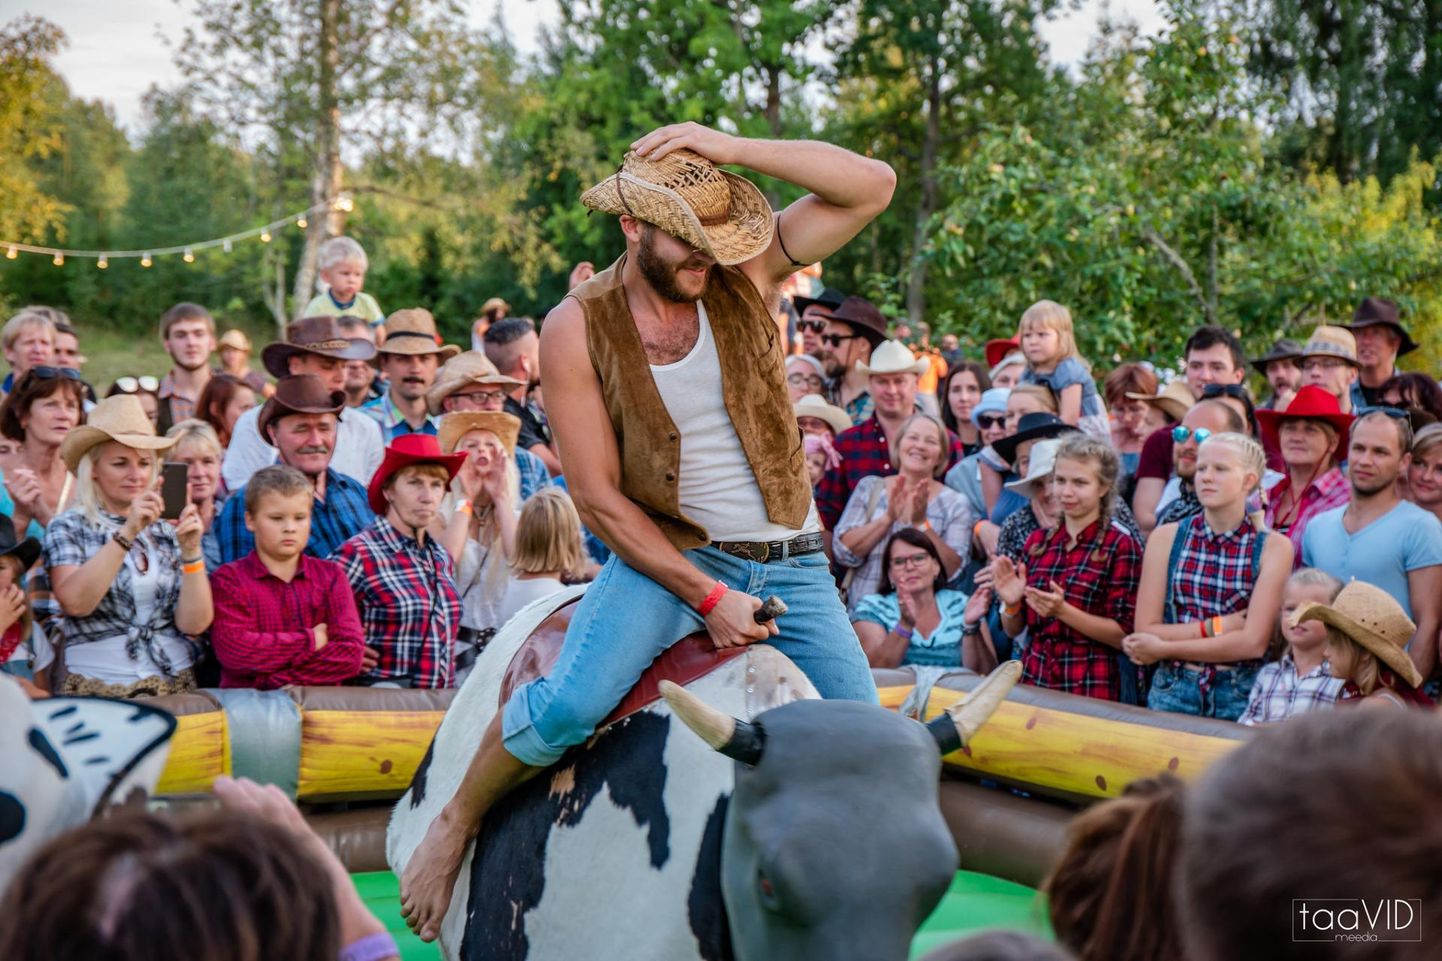 Festivali üks põnevam osa on kantrimehe ja -naise võistlus, kus mõõtu tuleb võtta näiteks rodeopulliga ratsutamises.